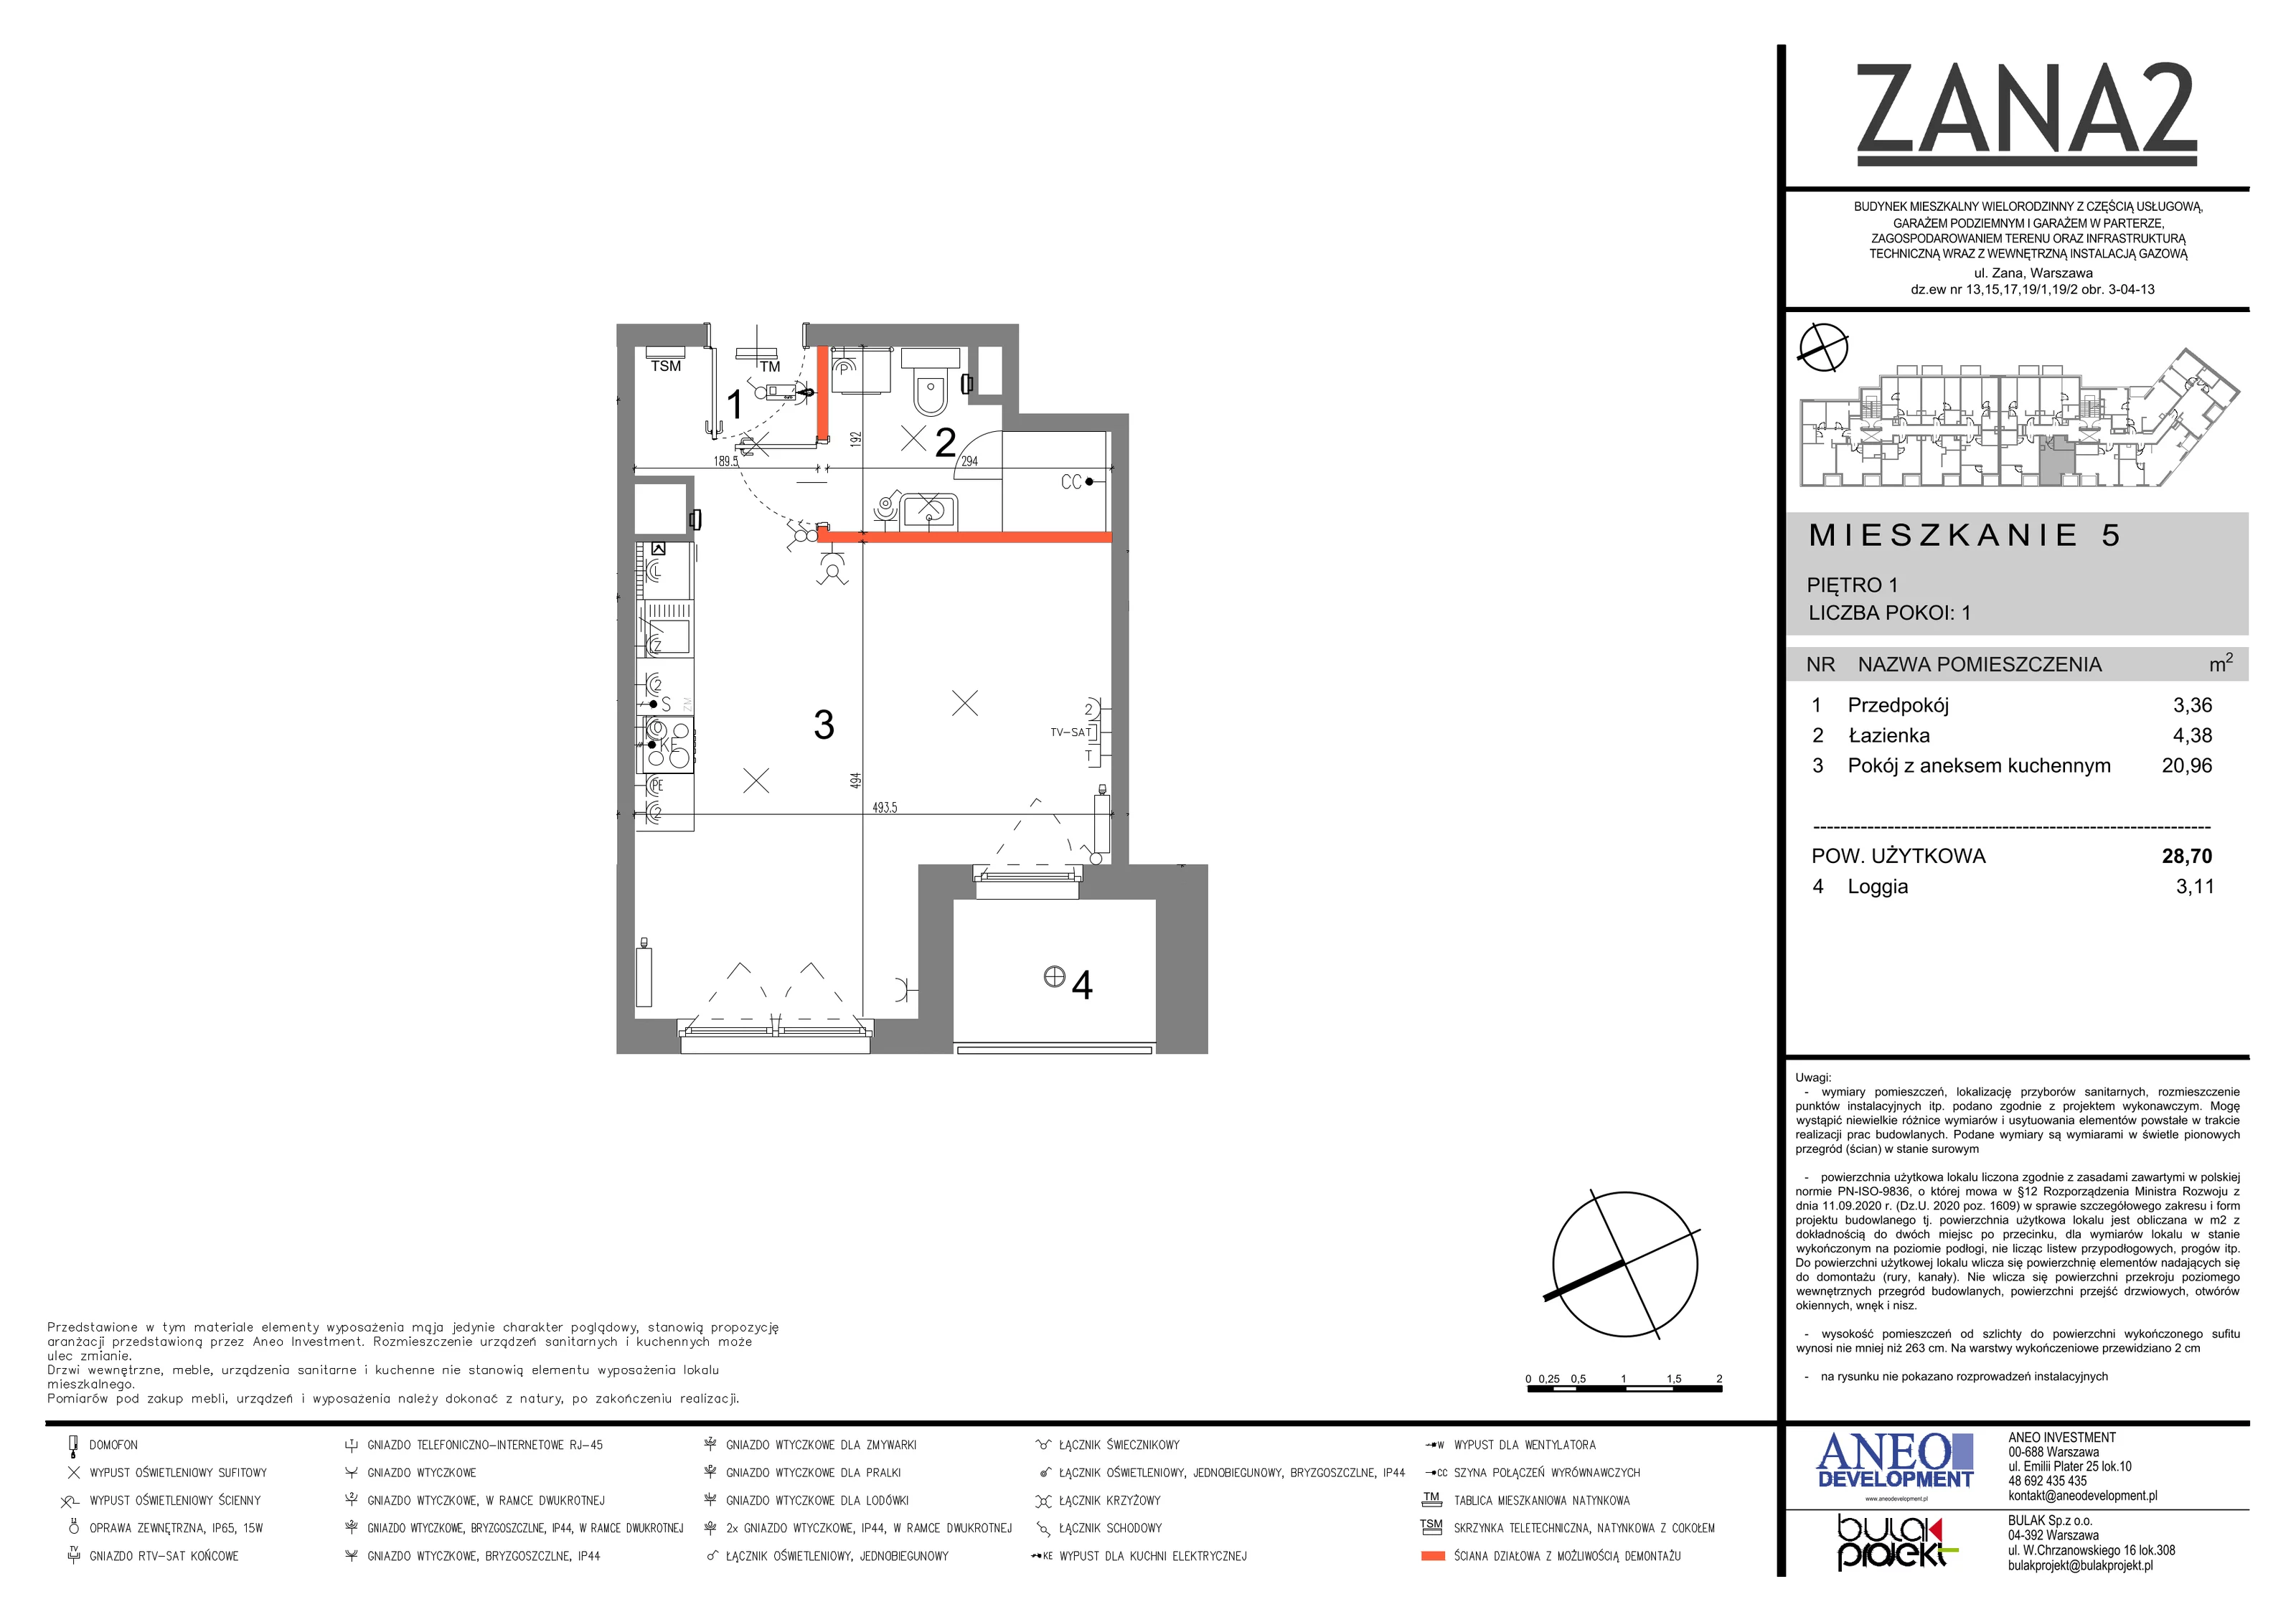 Mieszkanie 28,70 m², piętro 1, oferta nr 5, Zana 2, Warszawa, Praga Południe, Gocławek, ul. Tomasza Zana